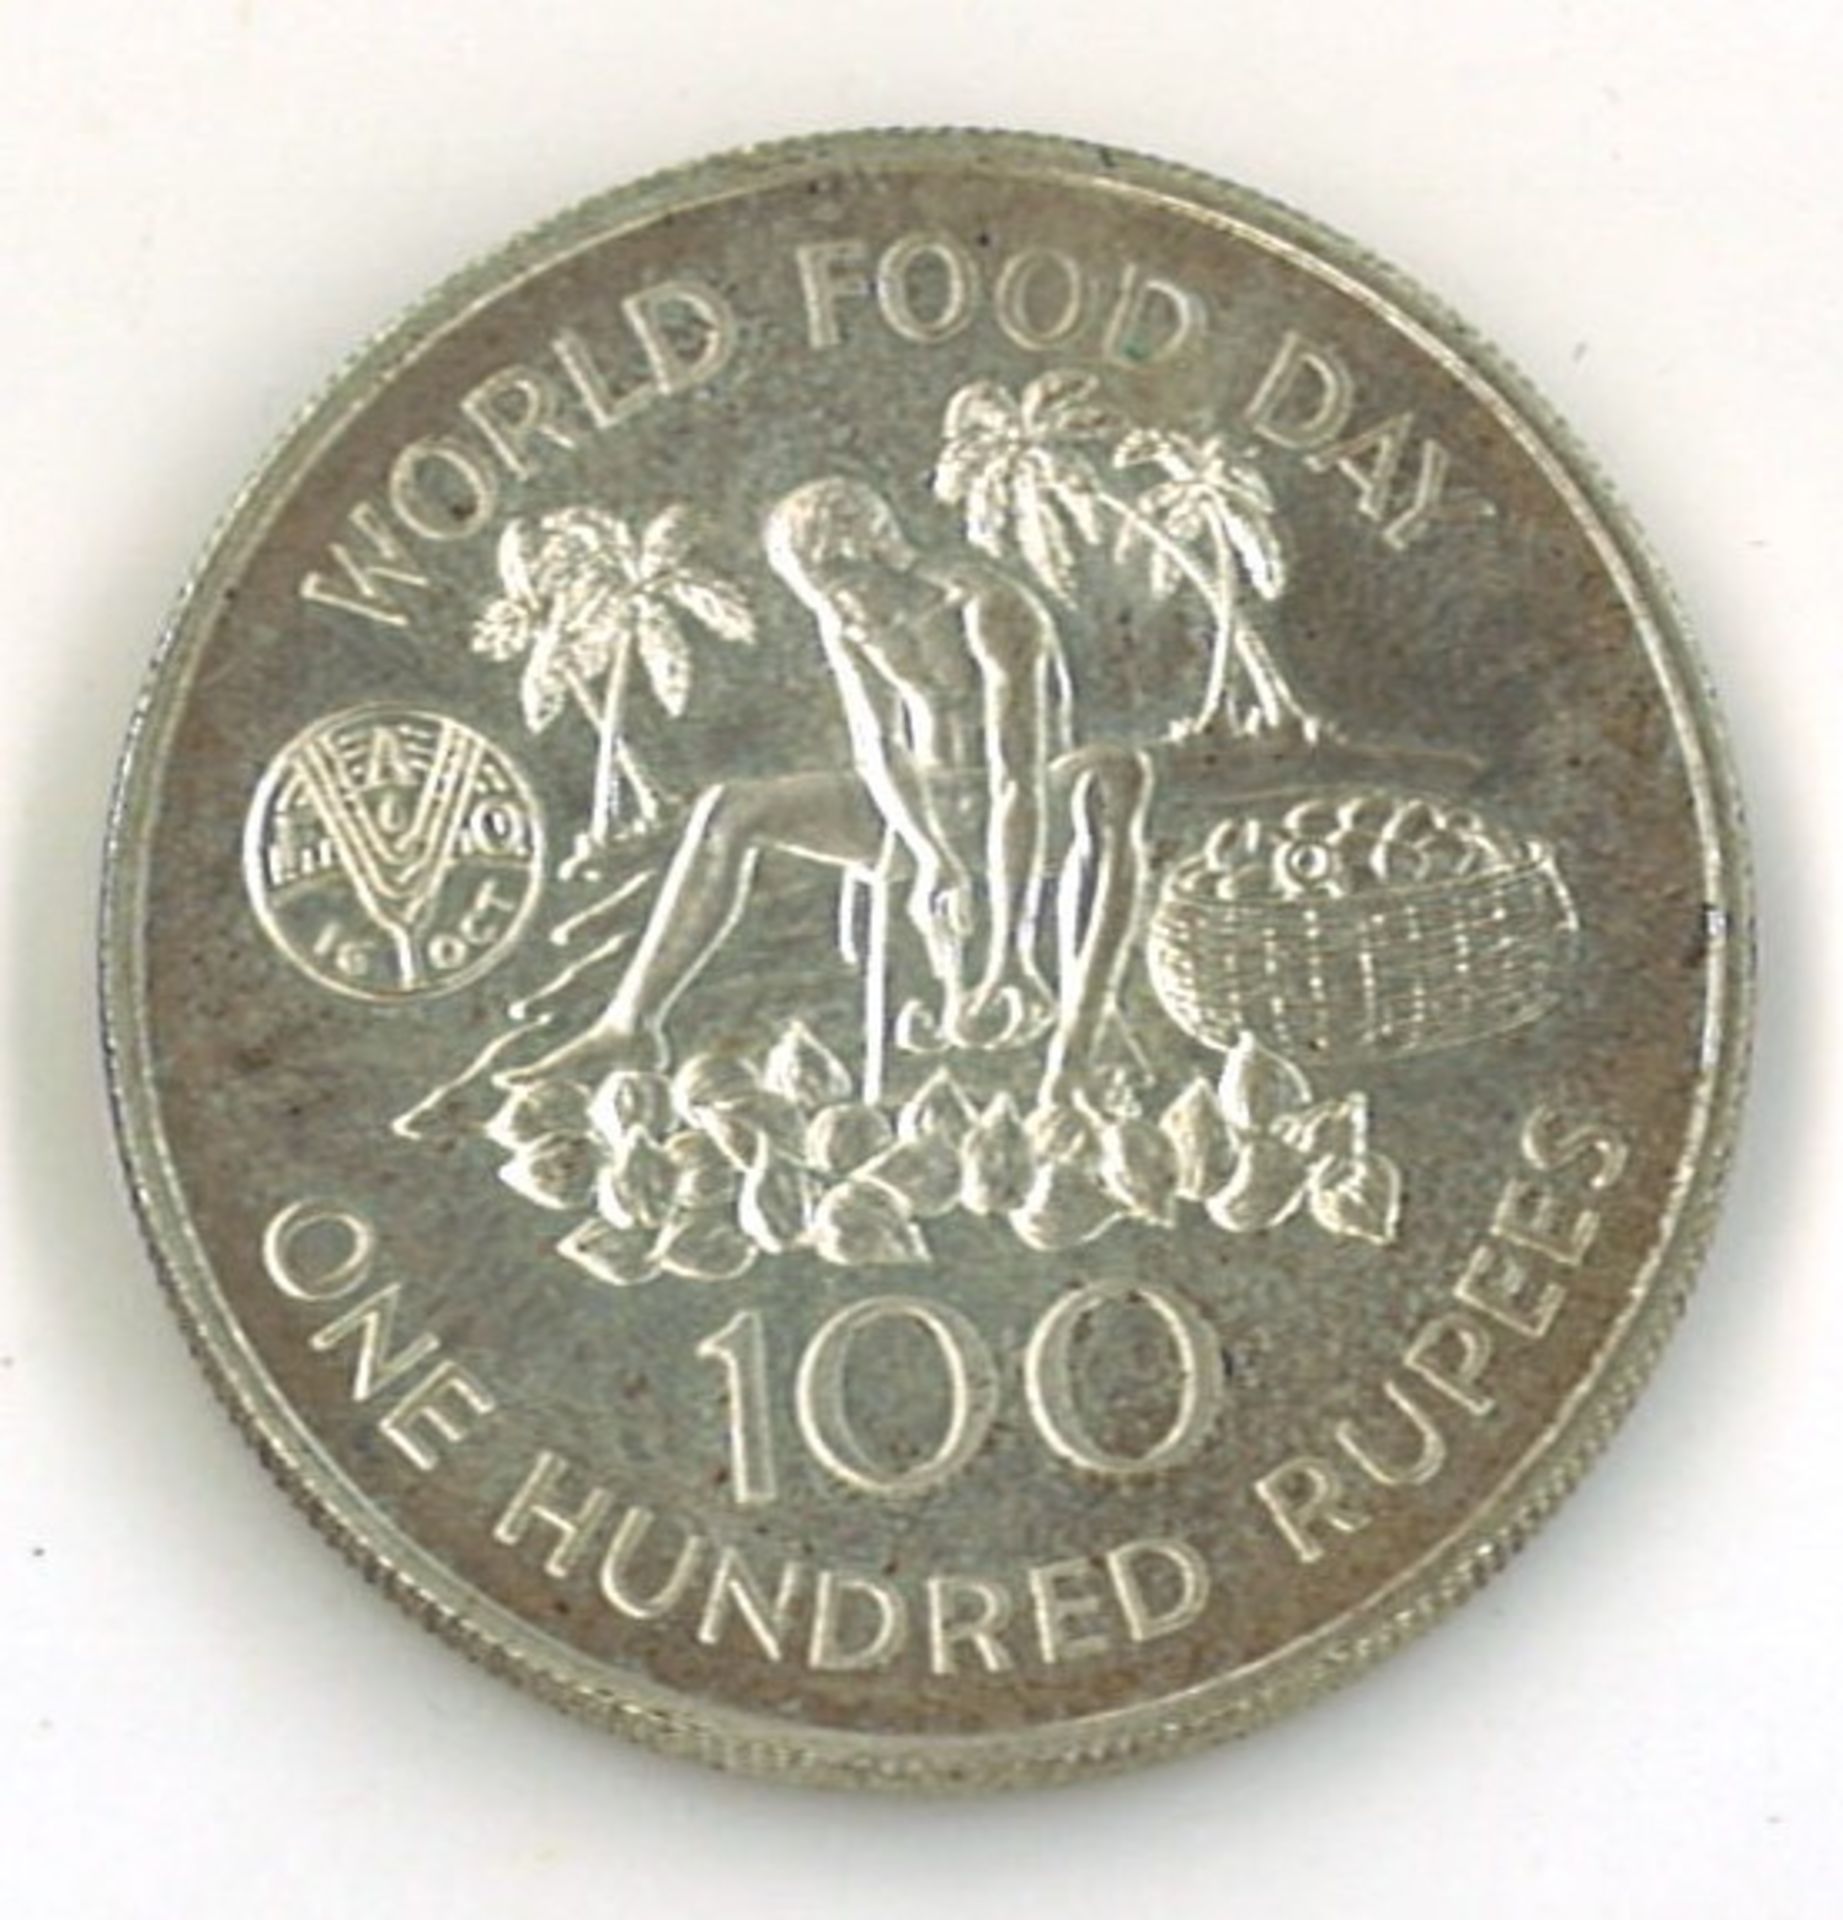 Seychellen 100 Rupien 1981 Silber "Welternährungstag FAO" Zustand: vz - Image 2 of 2